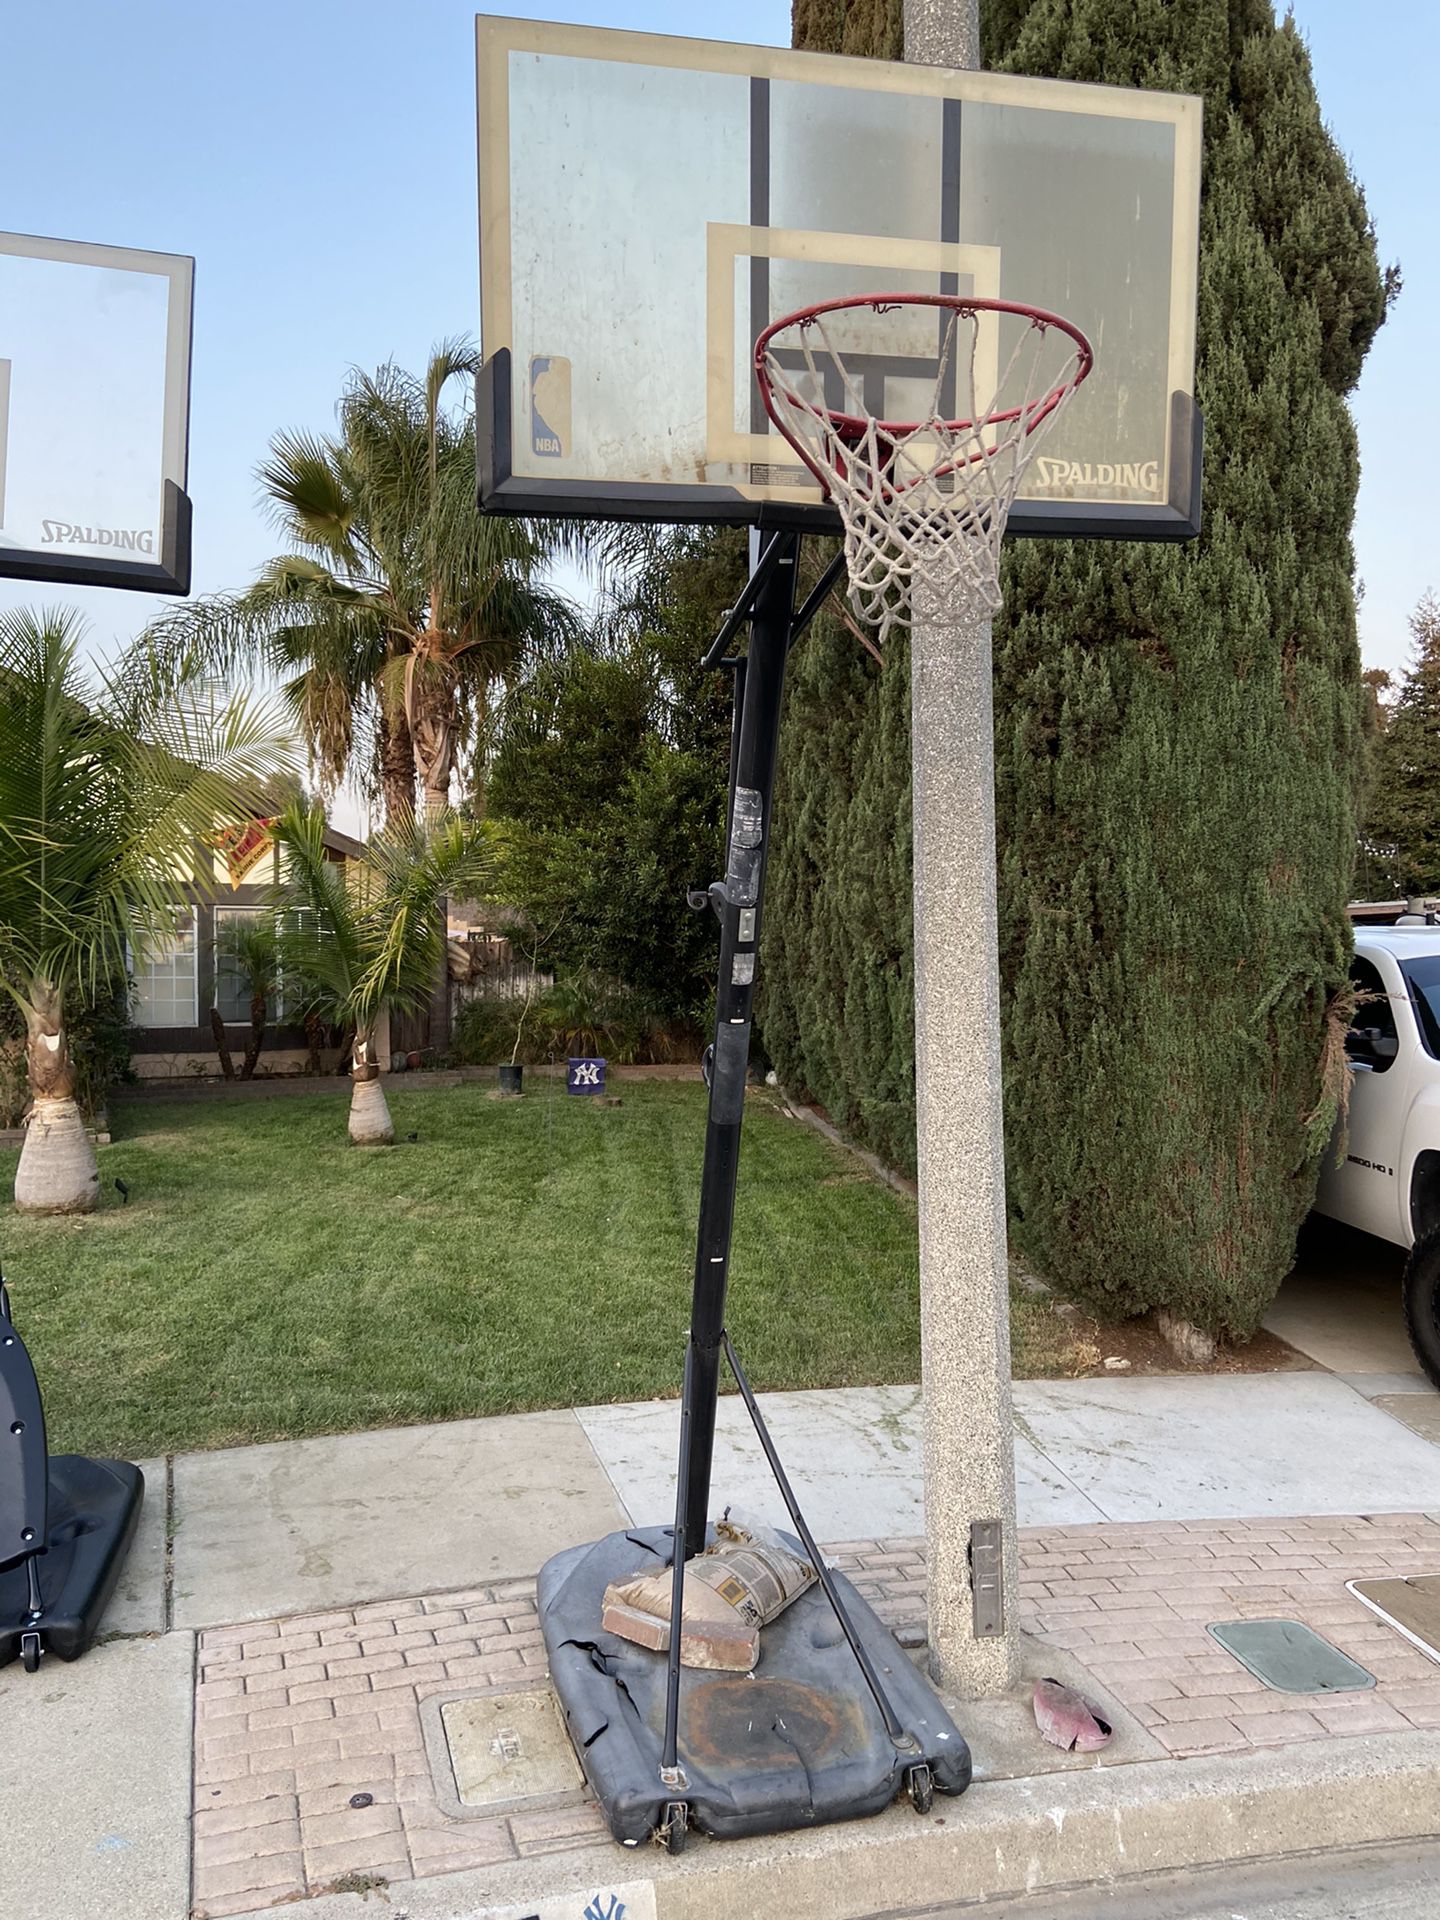 54” Spalding Basketball Hoop